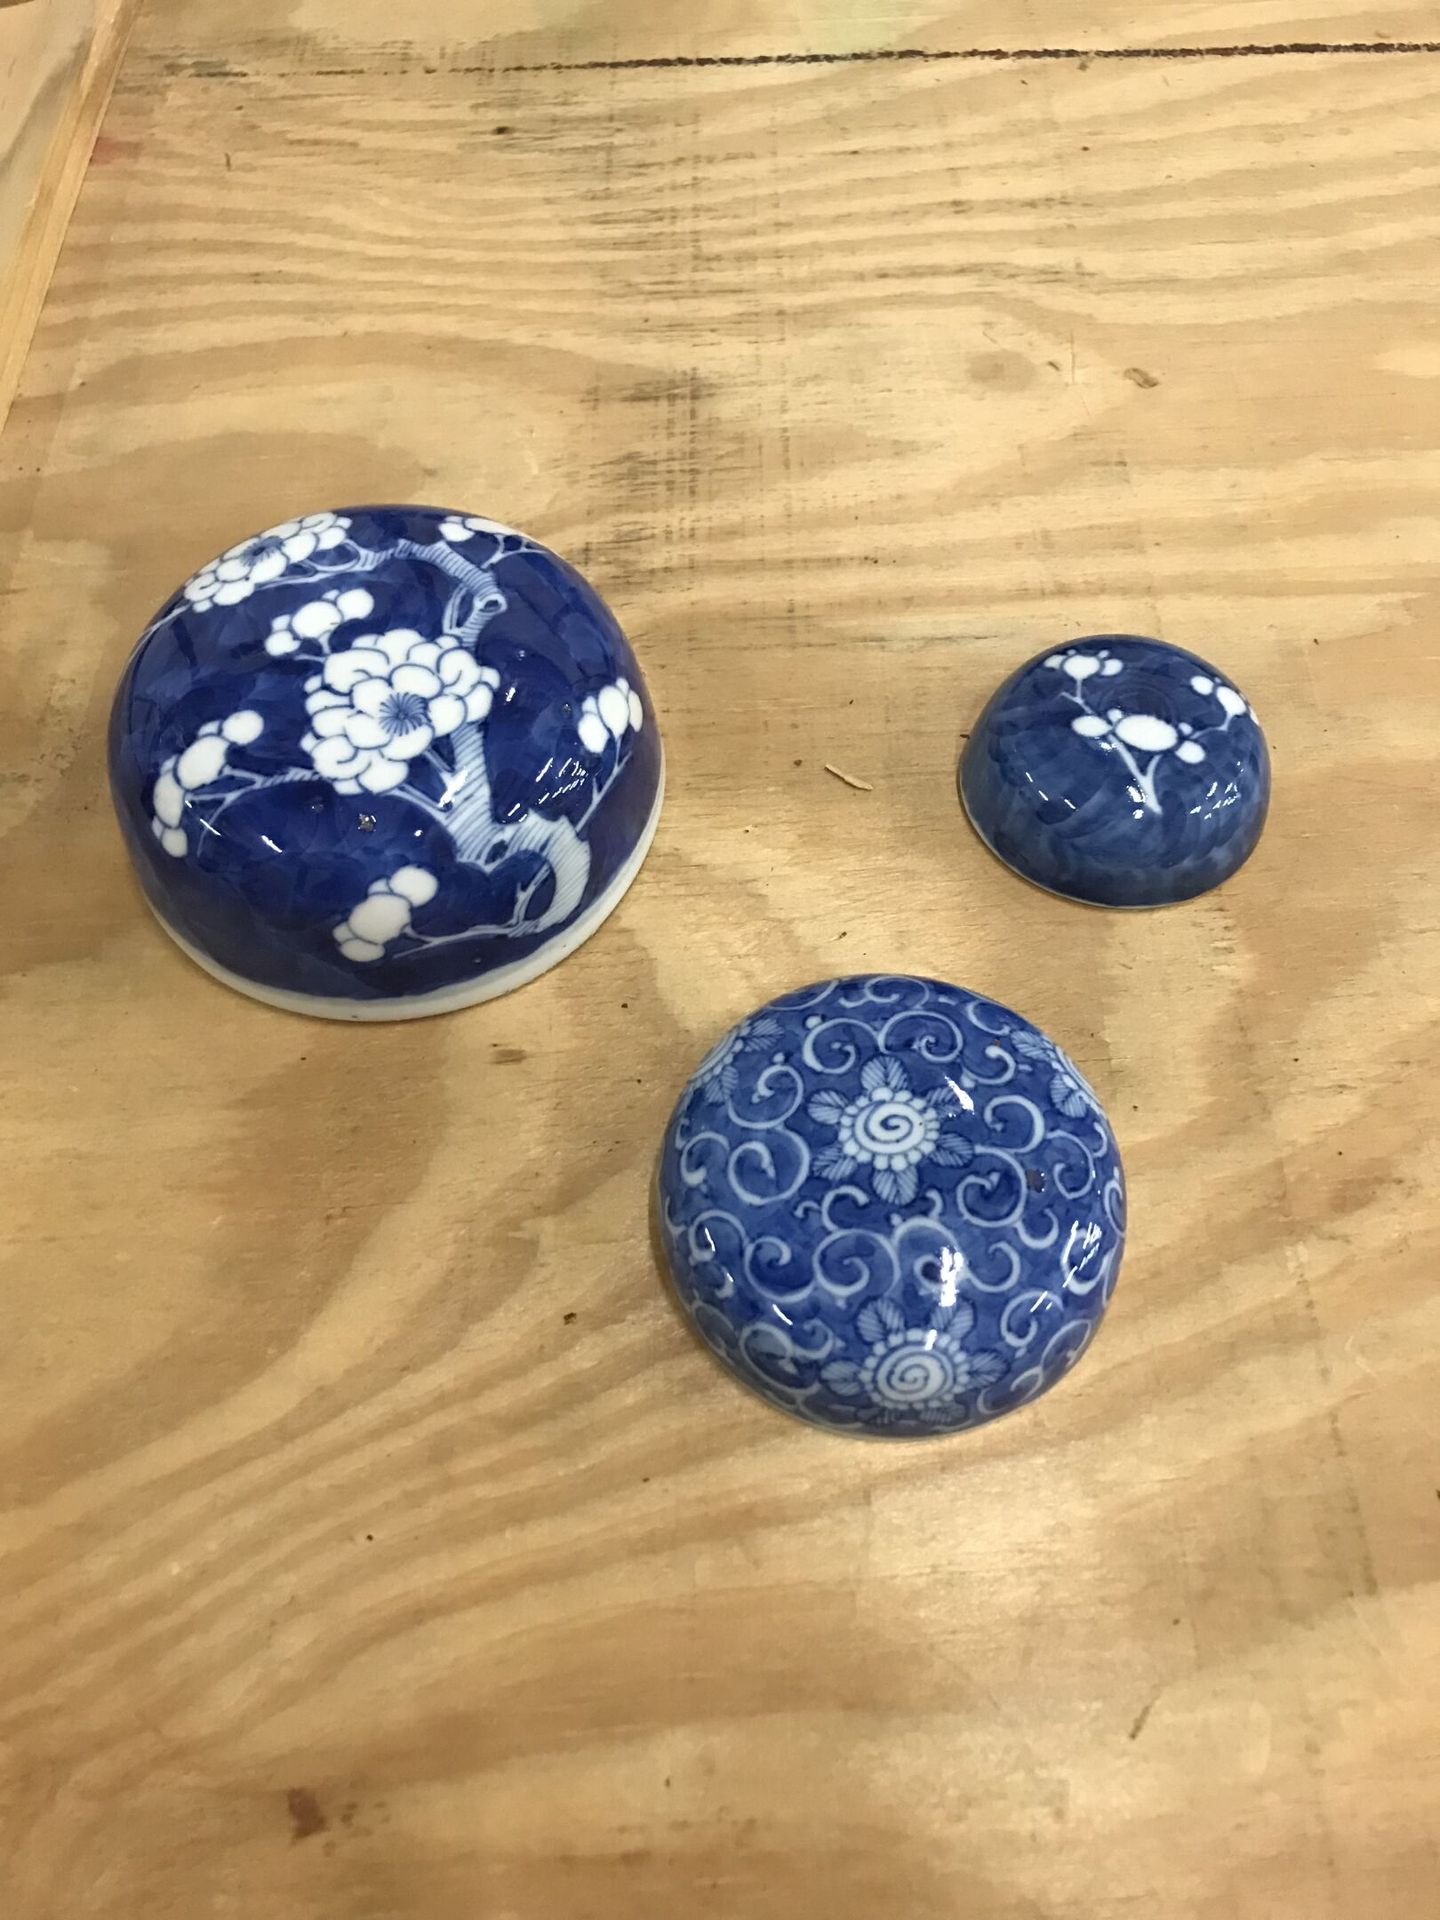 Null Un lote de porcelana china que incluye:

Tres tapas de porcelana azul y bla&hellip;